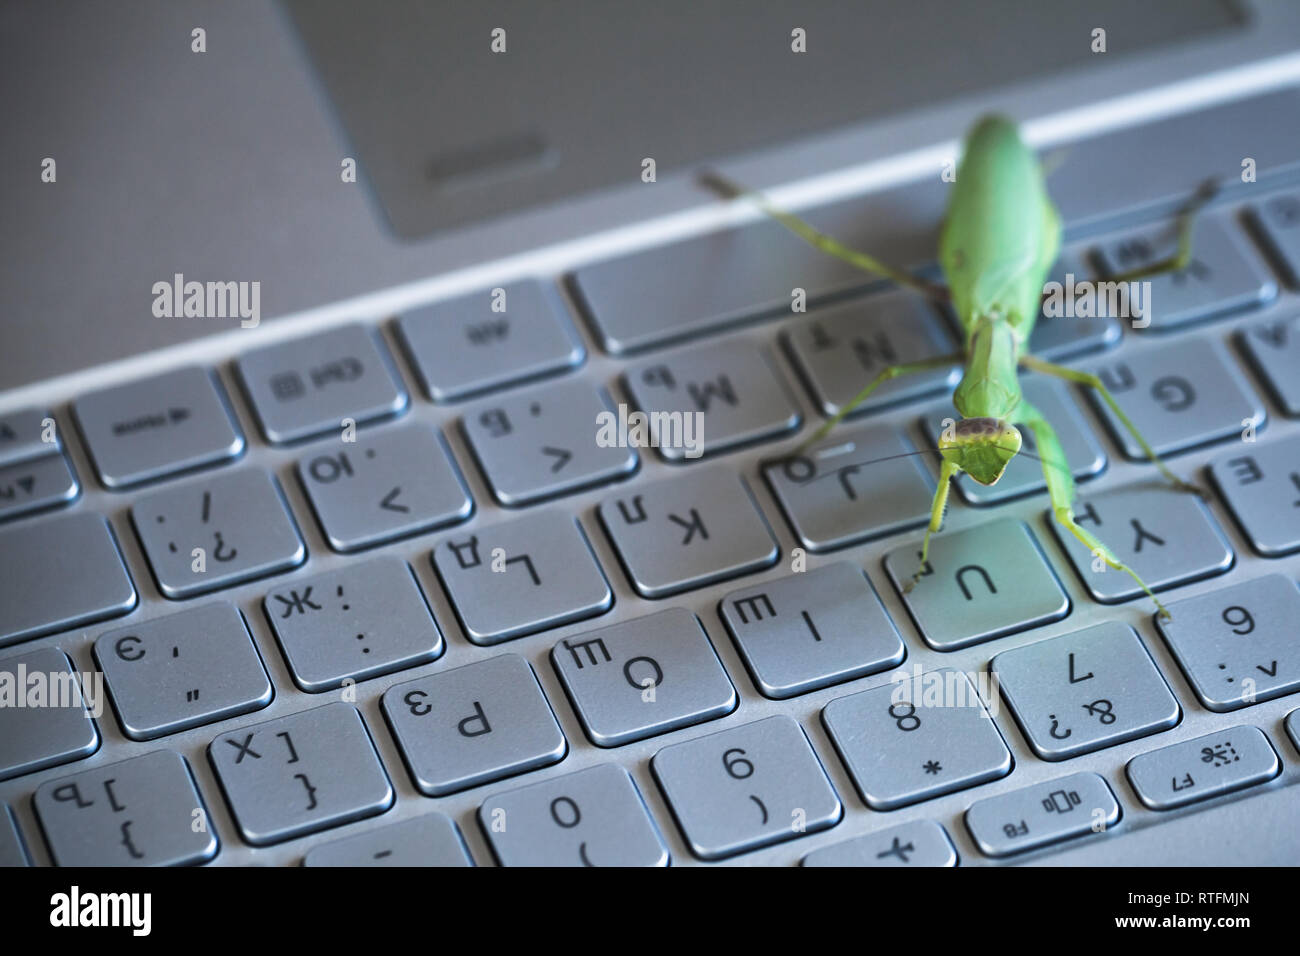 Bug Software metafora, mantide seduto su un computer portatile con tastiera inglese e lettere in russo Foto Stock